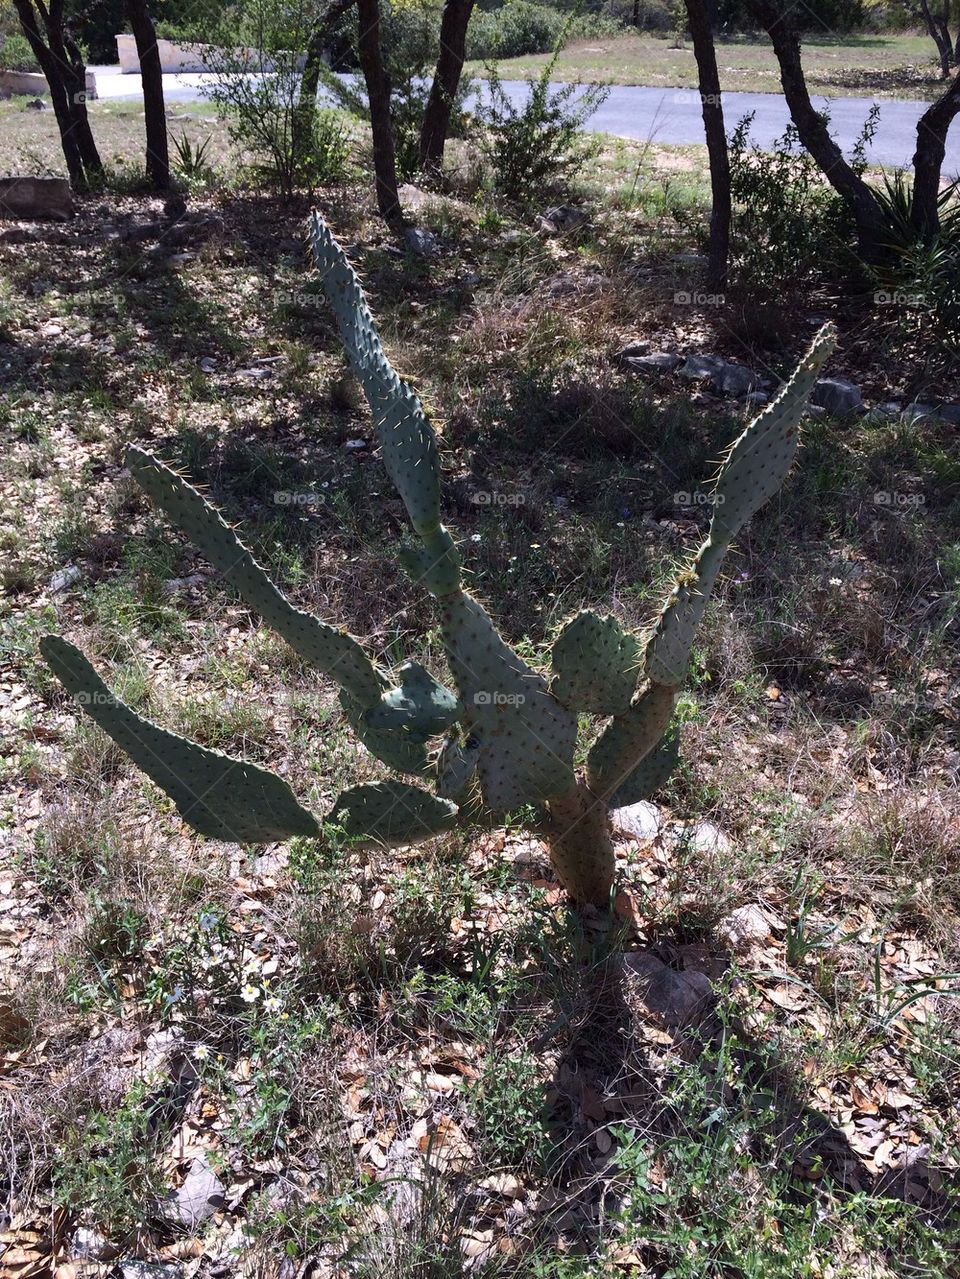 Texas cactus